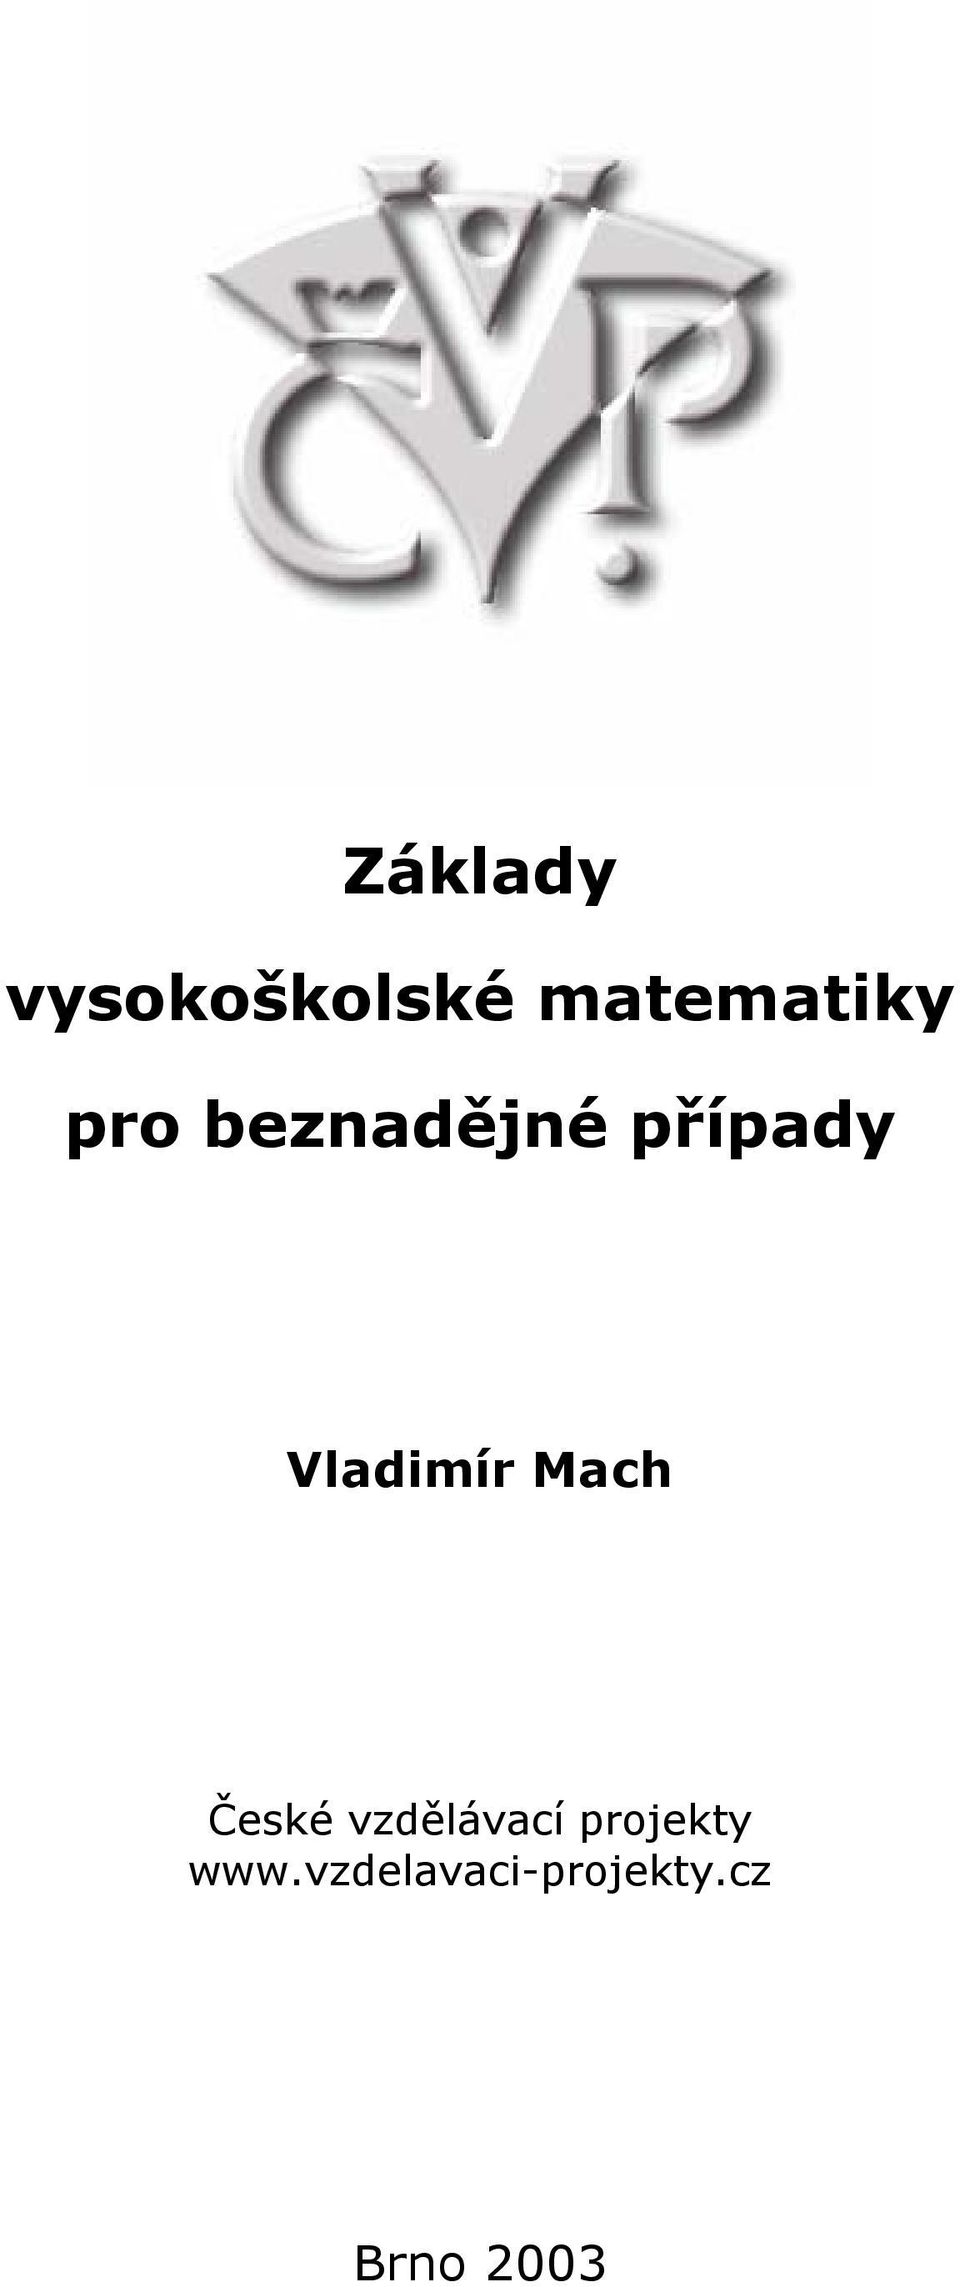 případy Vladimír Mach České